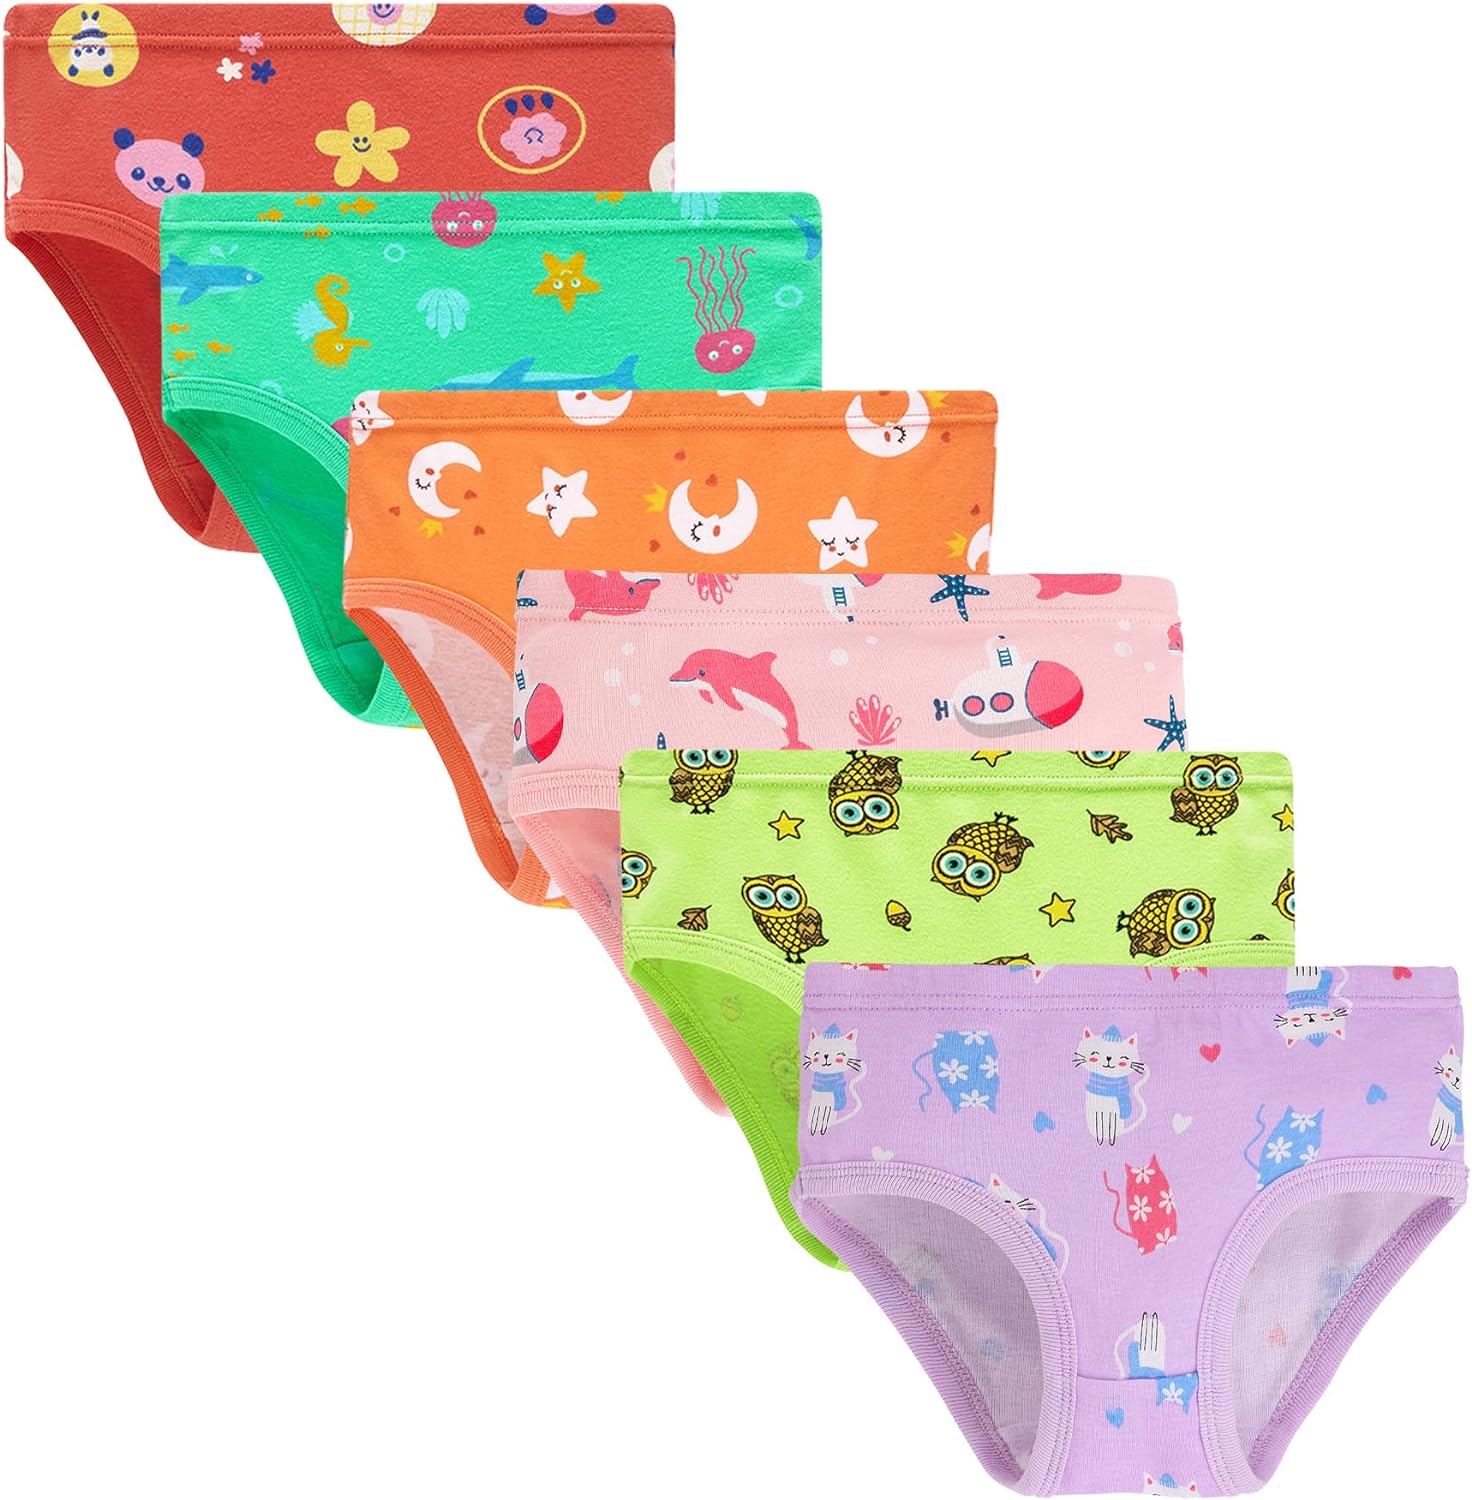 Buy Boboking Soft 100% Cotton Girls' Panties Girlshort Little Girls'  Underwear Toddler Undies Online at desertcartSeychelles